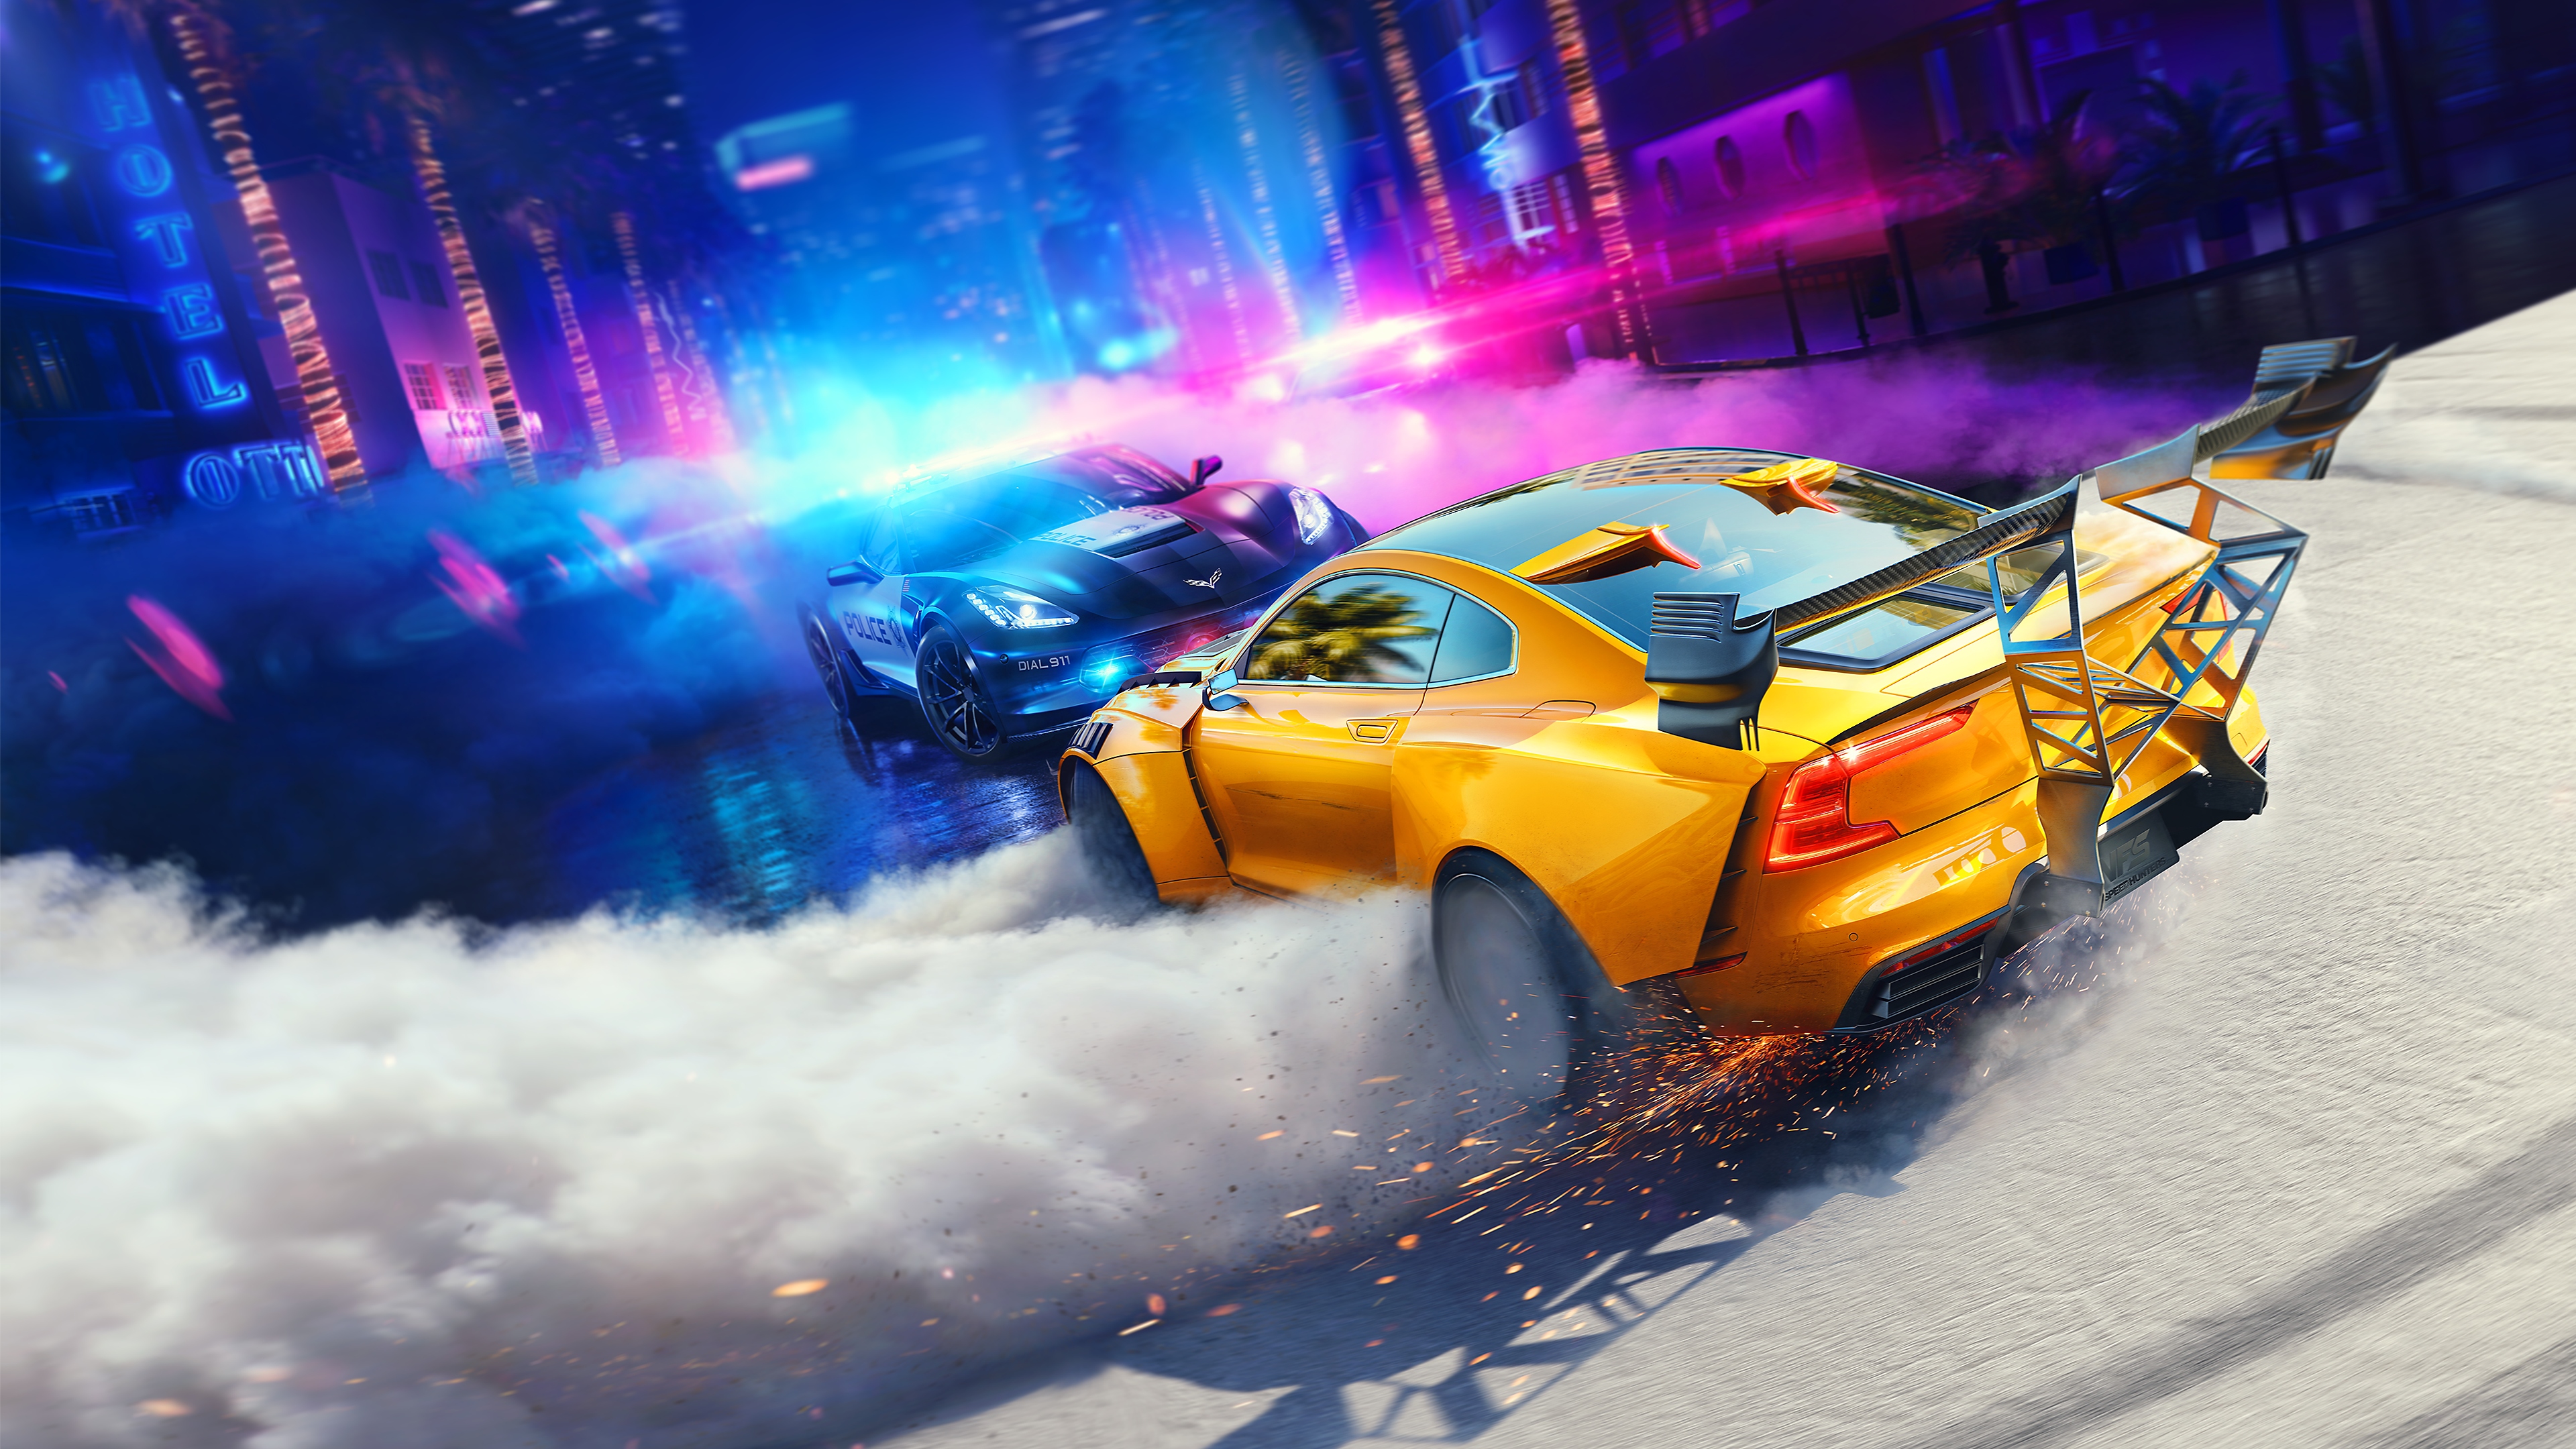 ภาพหลักของ Need for Speed Heat ซึ่งเป็นภาพรถกำลังเบิร์นยาง